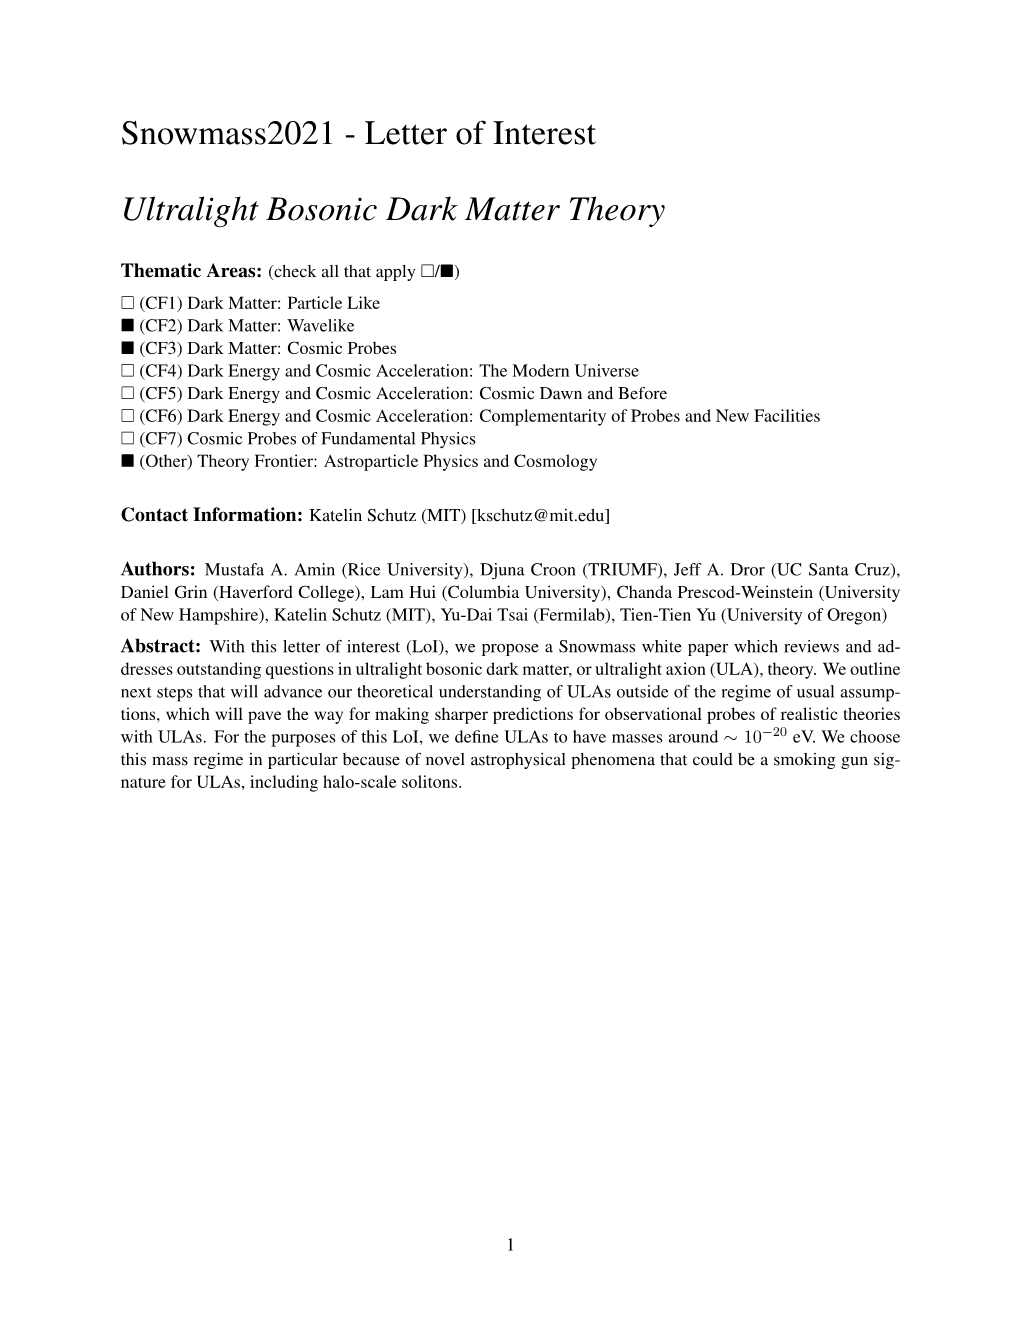 Letter of Interest Ultralight Bosonic Dark Matter Theory